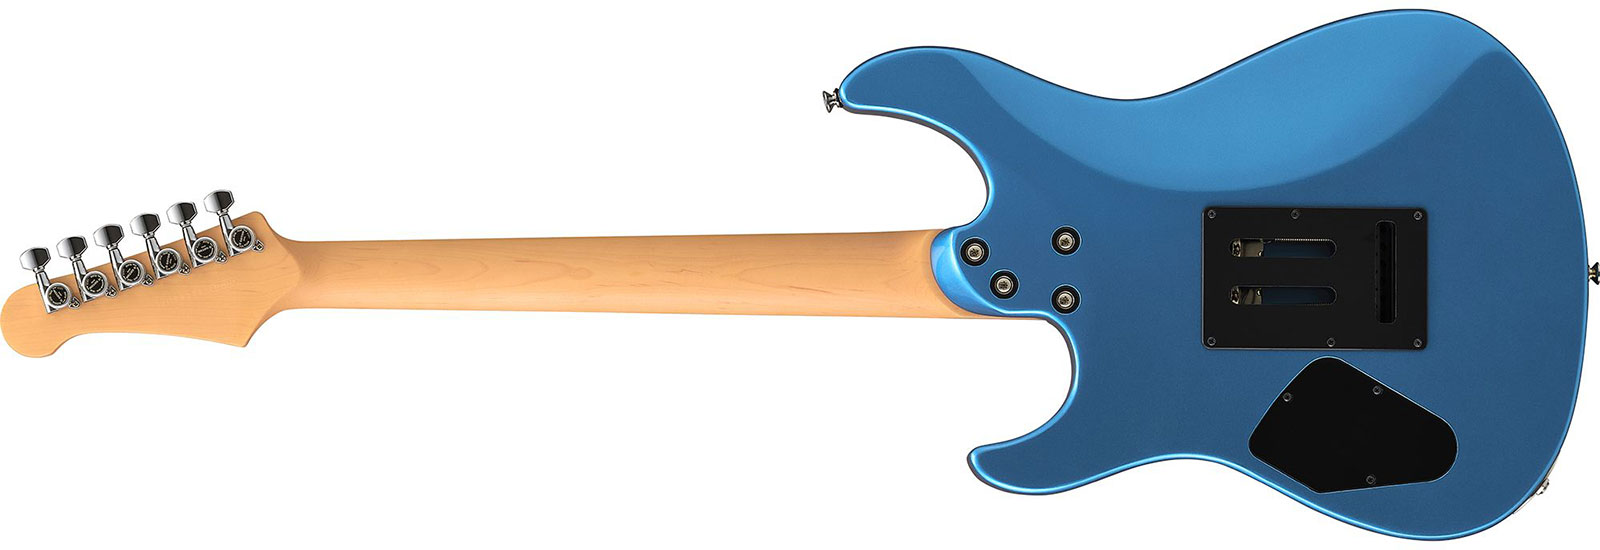 Yamaha Pacifica Standard Plus Pacs+12 Trem Hss Rw - Sparkle Blue - Guitare Électrique Forme Str - Variation 1